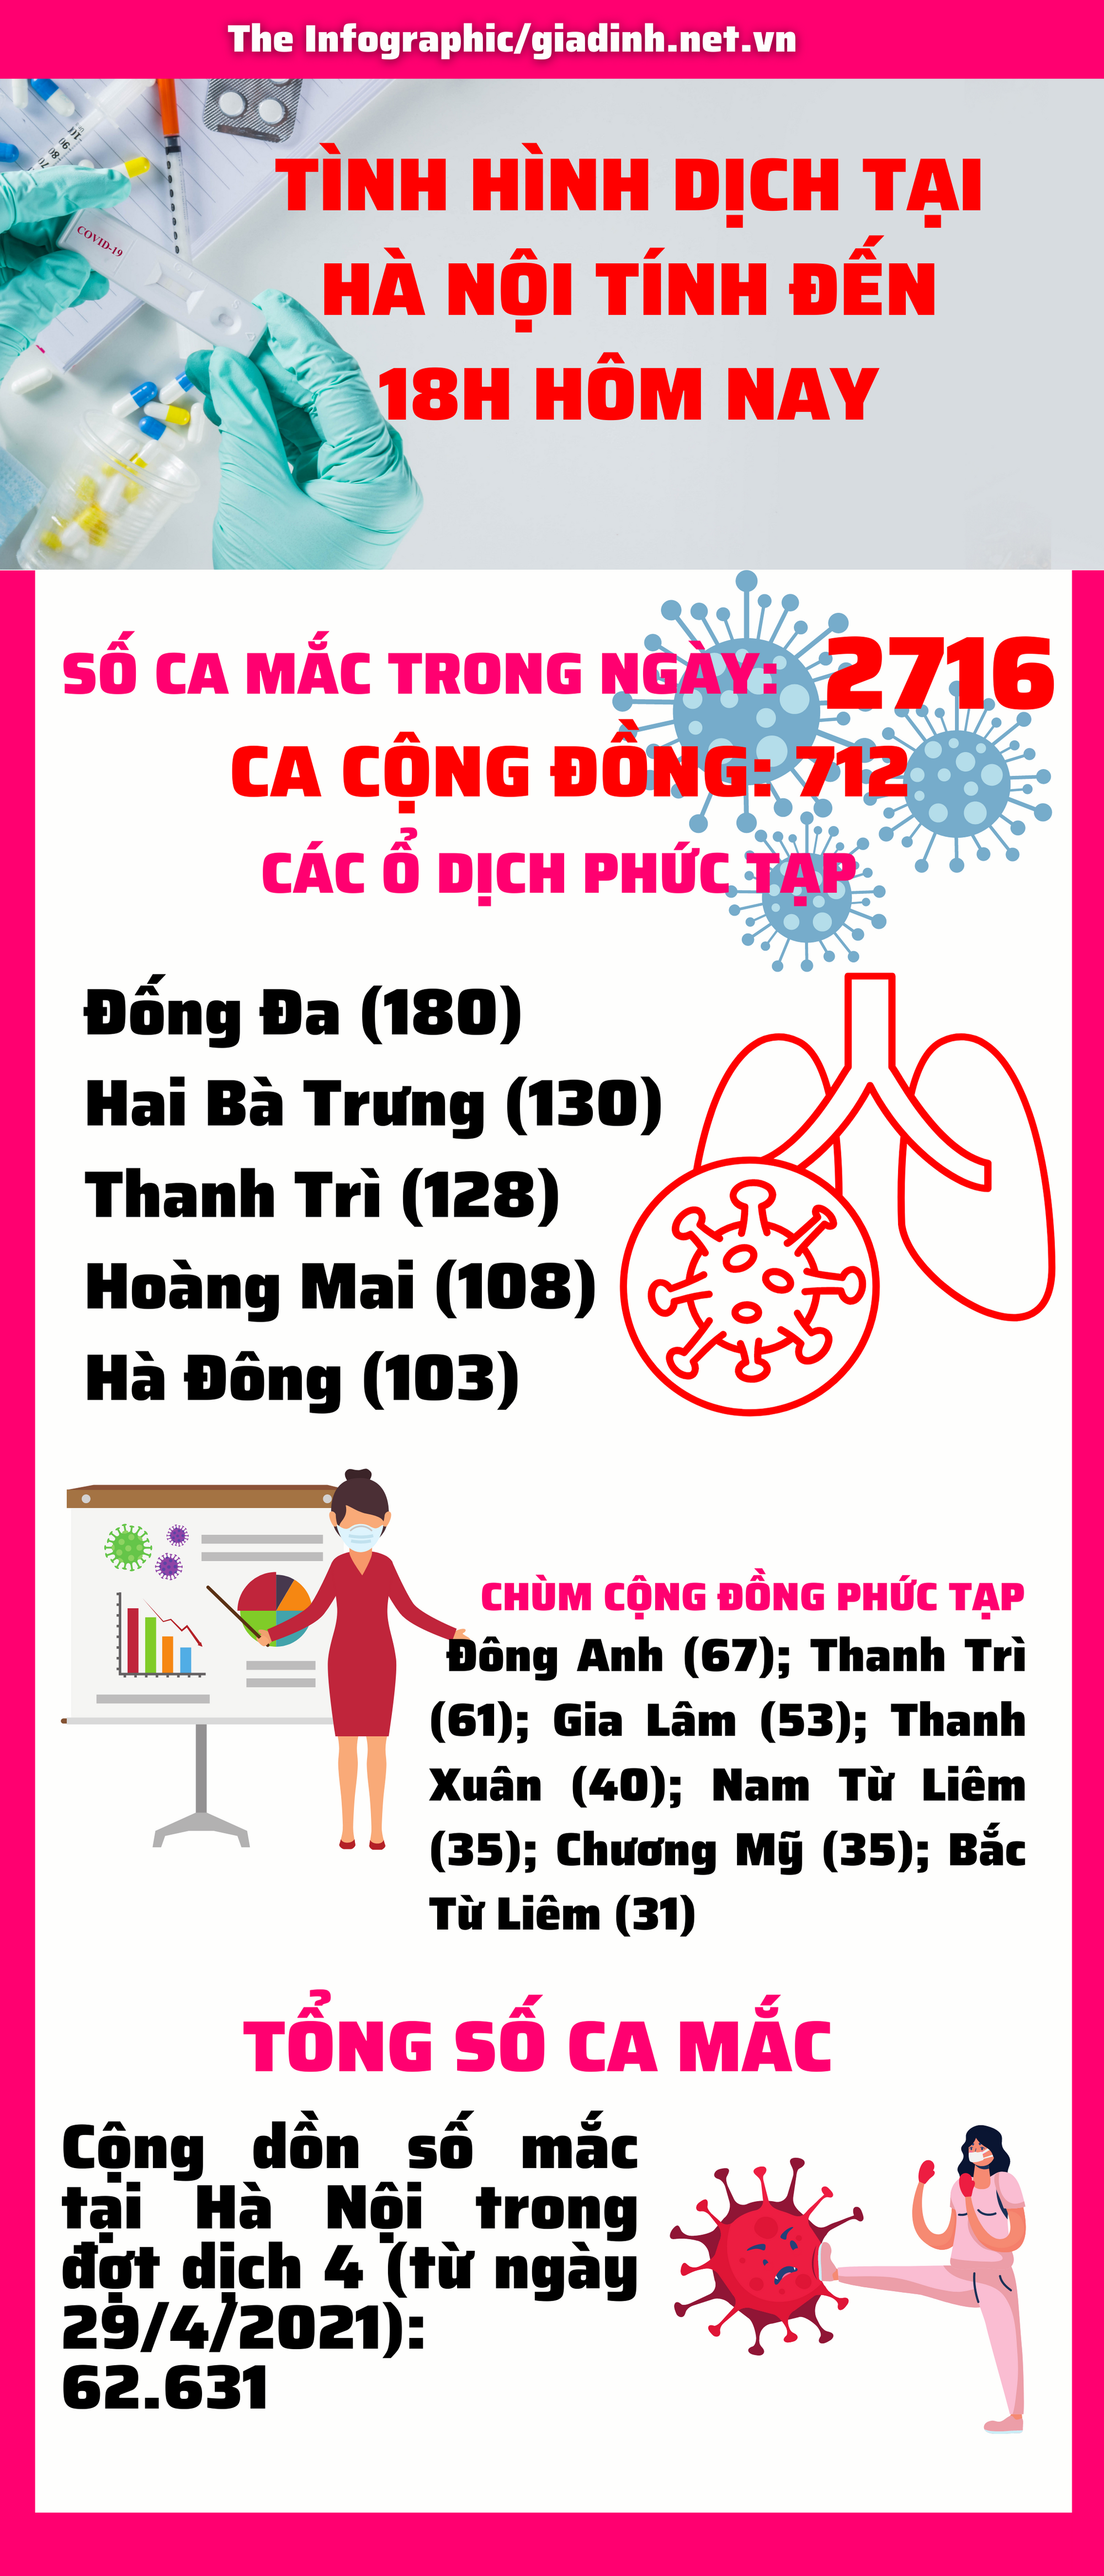 Hà Nội vượt ngưỡng 2.700 ca COVID-19 mới với 712 ca cộng đồng, biểu đồ dựng đứng - Ảnh 1.